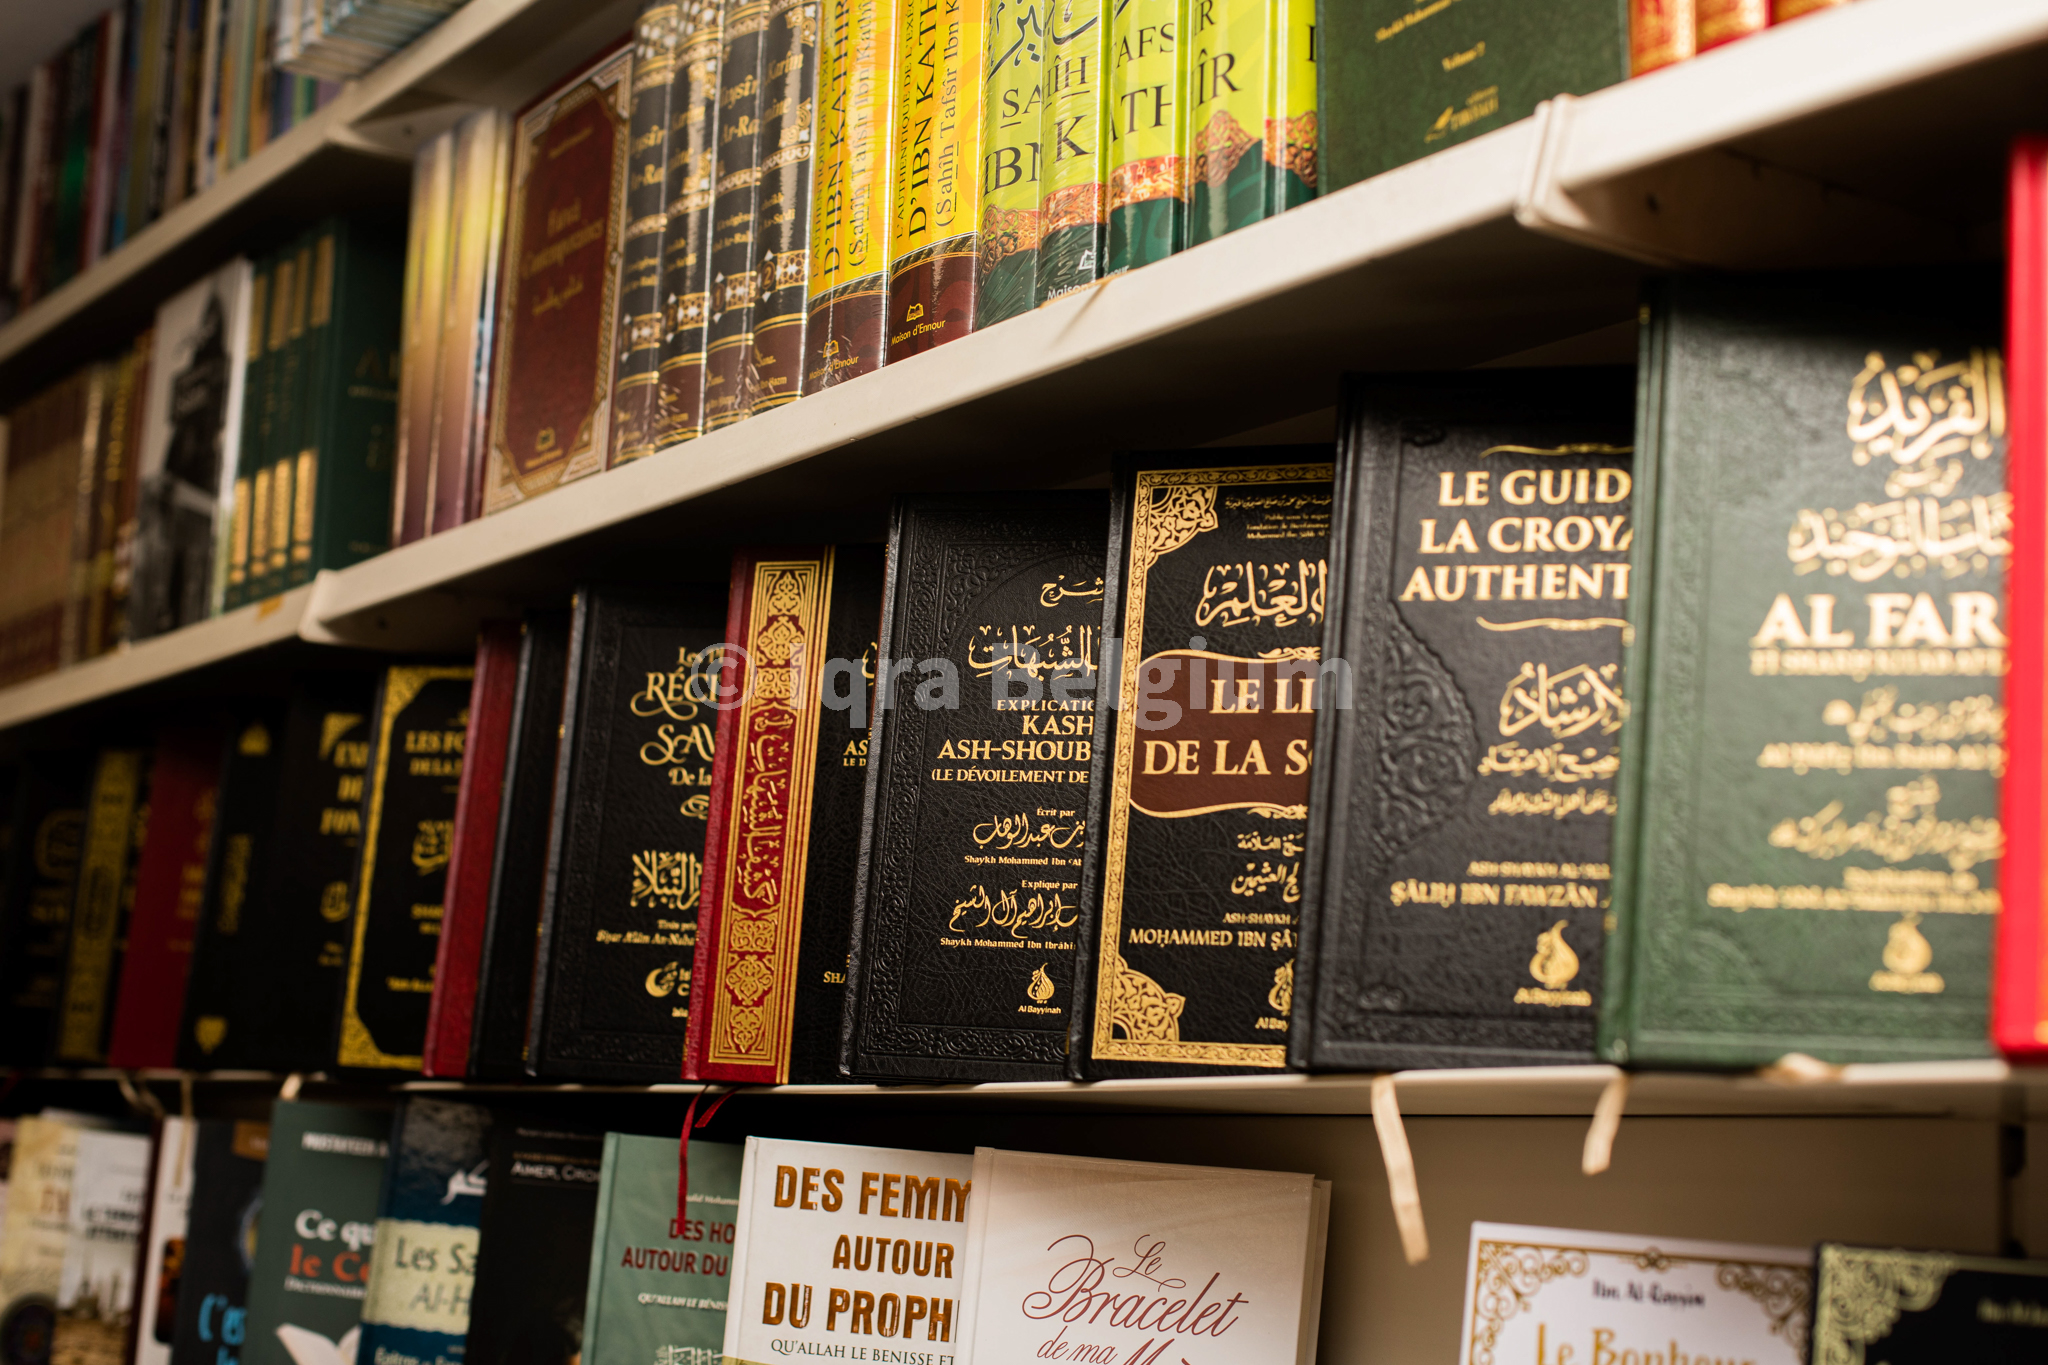 Iqra réunnis tous les livres que tu recherches dans tout les domaines: apprentissage, dogme, islam, hadith, cuisine, éducation,...